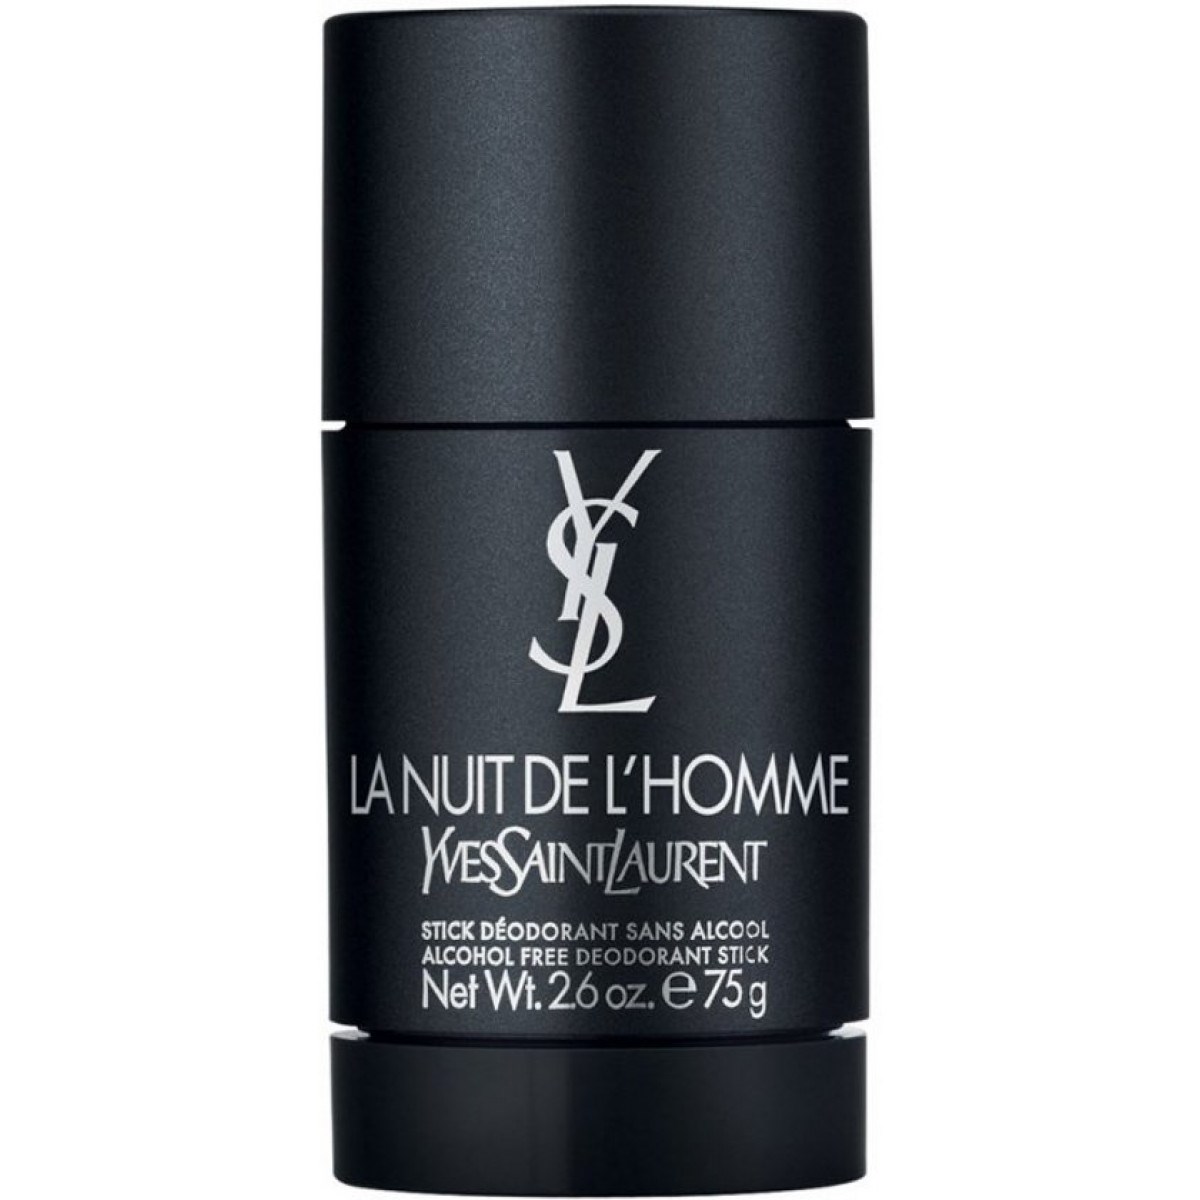 Buy Parfum de L'Homme Alcohol Free Deodorant Stick | Beauty Plaza